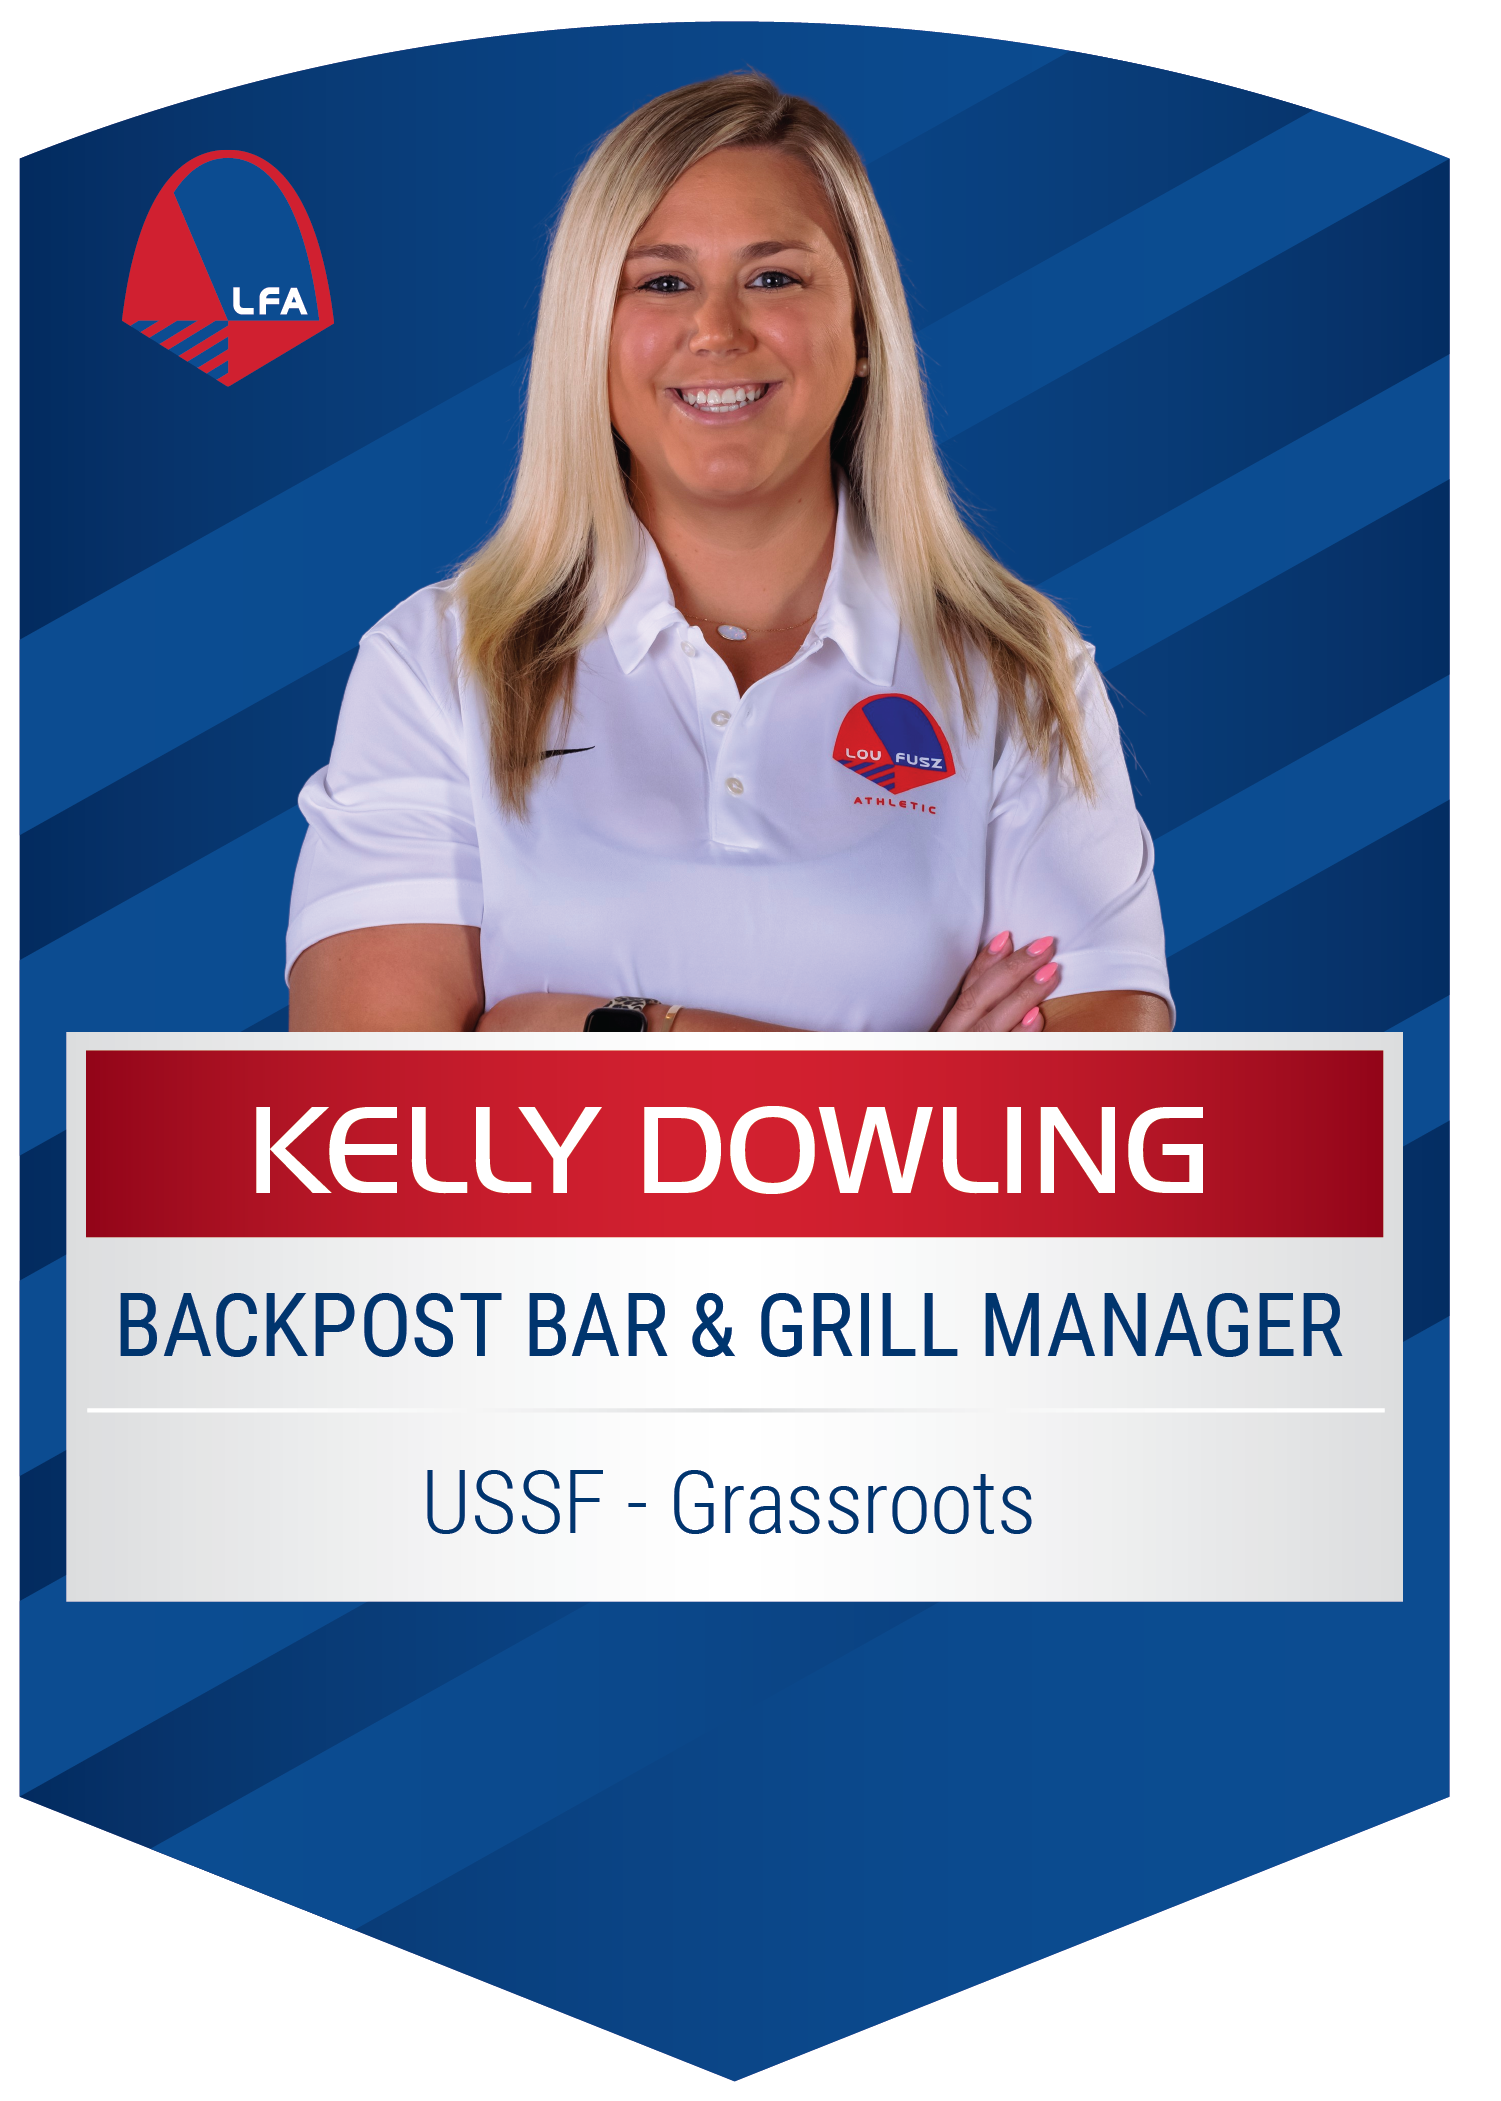 Kelly Dowling